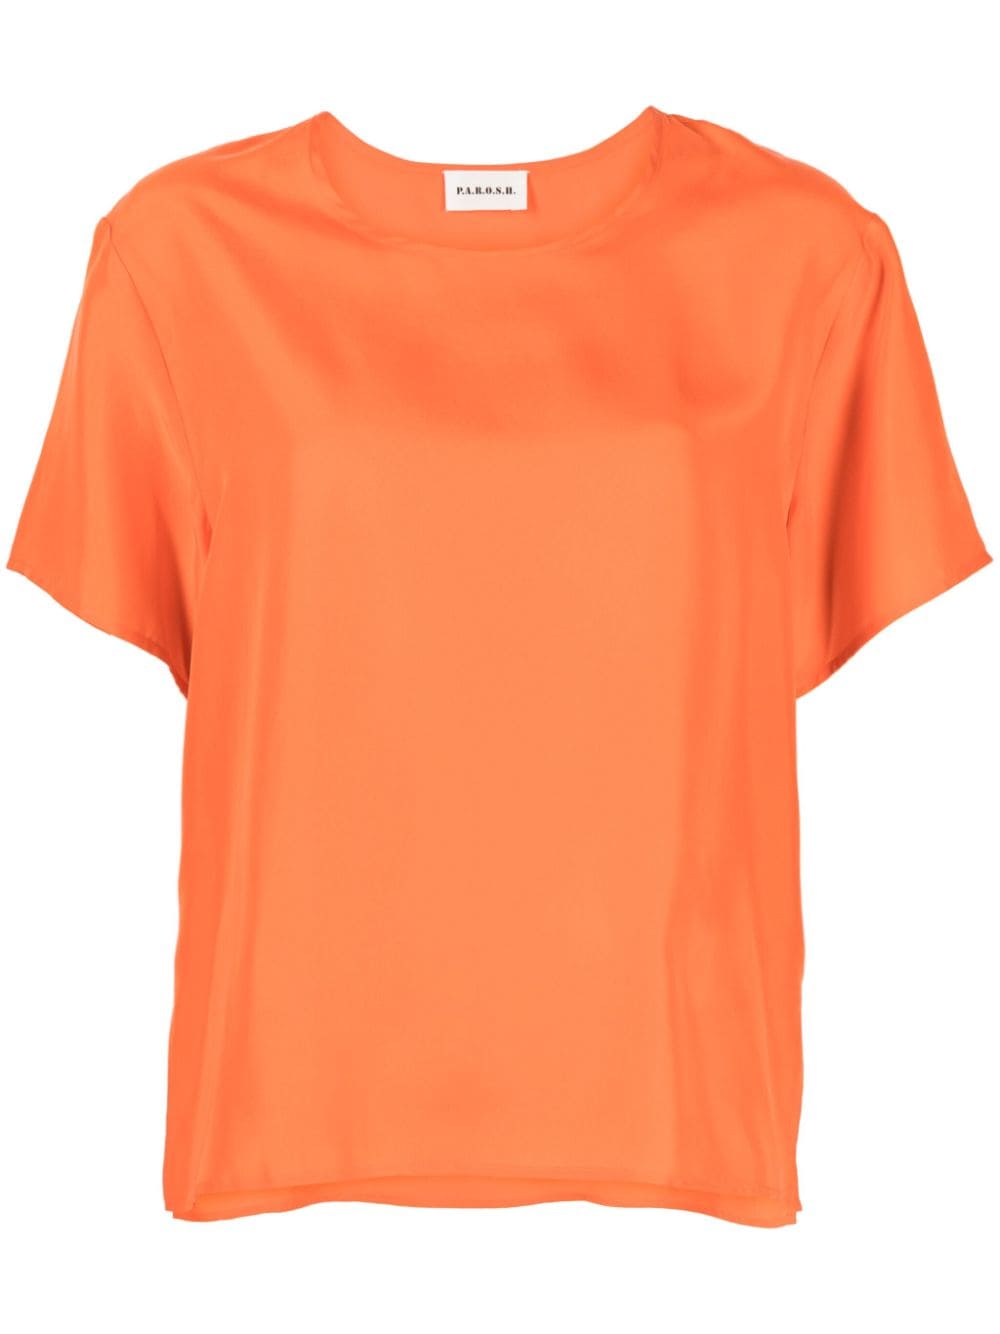 P.a.r.o.s.h Sunny Silk T-shirt In Orange